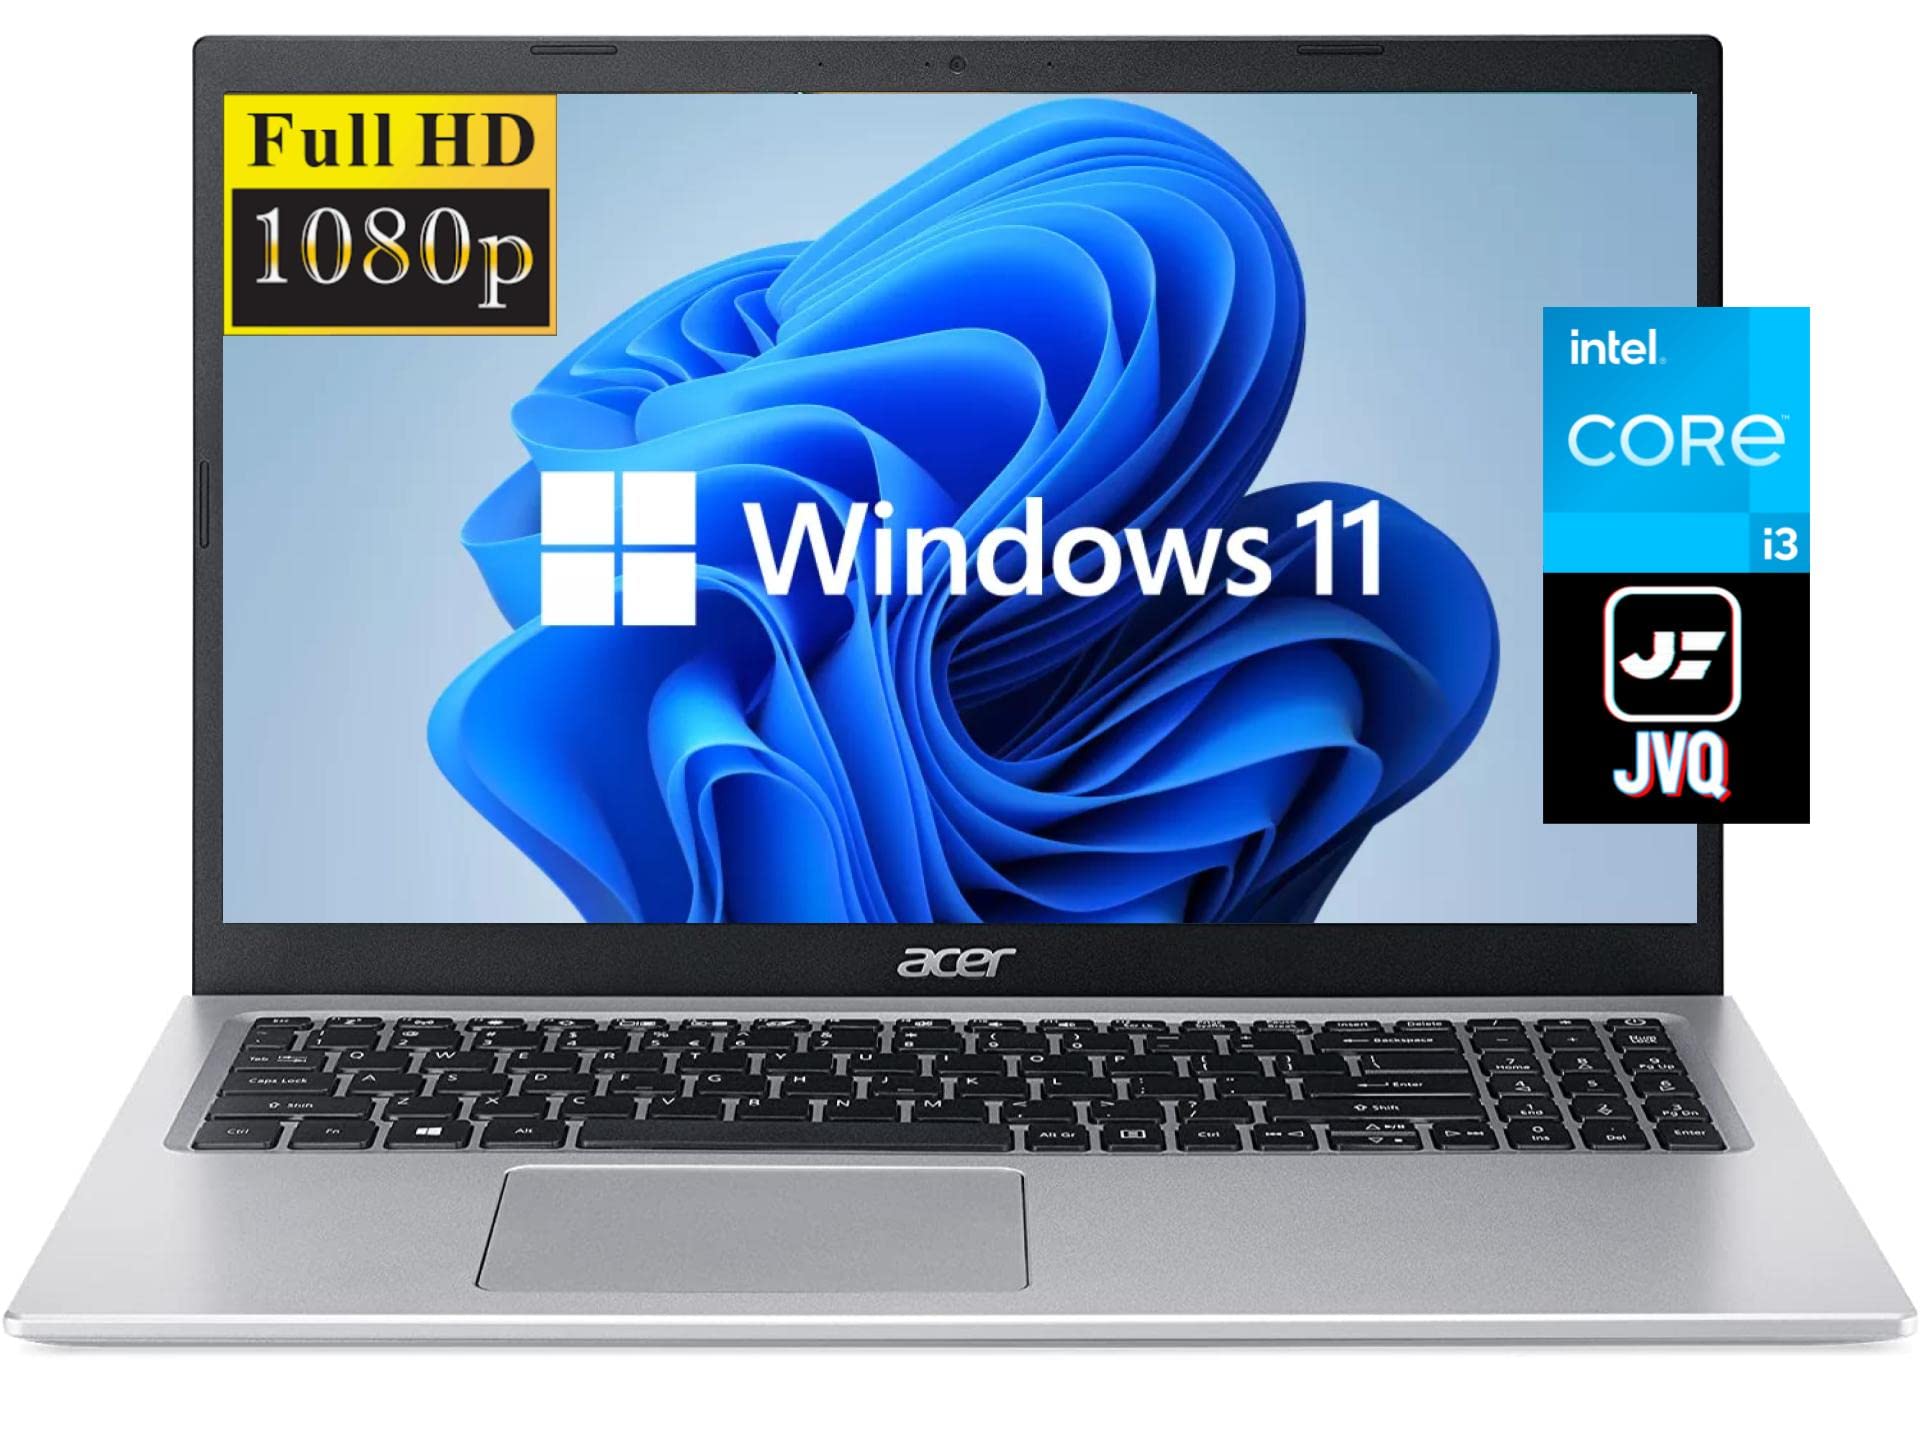 acer 2023 Newest Aspire 5 Slim 15.6"" FHD Laptop, 11th Gen Intel Core i3-1115G4(Up to 4.1GHz,Beat i5-7200U), 8GB DDR4 RAM, 128GB SSD+500GB HDD, WiFi 6, USB-C, Webcam, HDMI, Windows 11S+JVQ MP, Silver